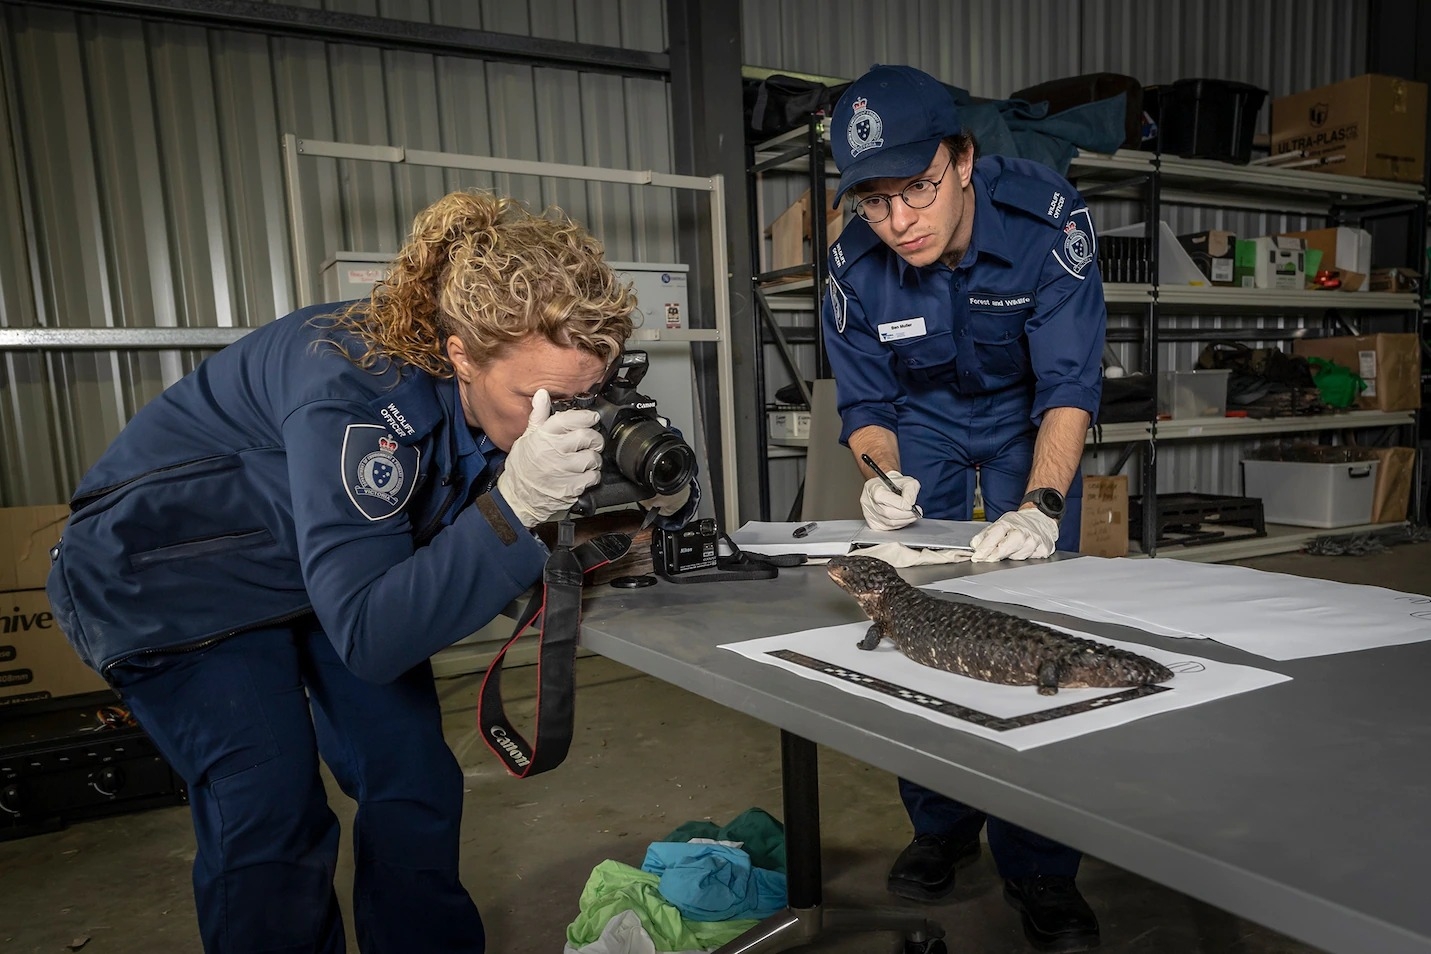 资深森林与野生动物警察艾比．史密斯（Abby Smith），正为2019年2月在墨尔本查缉到的一只松果蜥拍照存证。松果蜥是国际非法宠物贸易市场上最受欢迎的爬行类